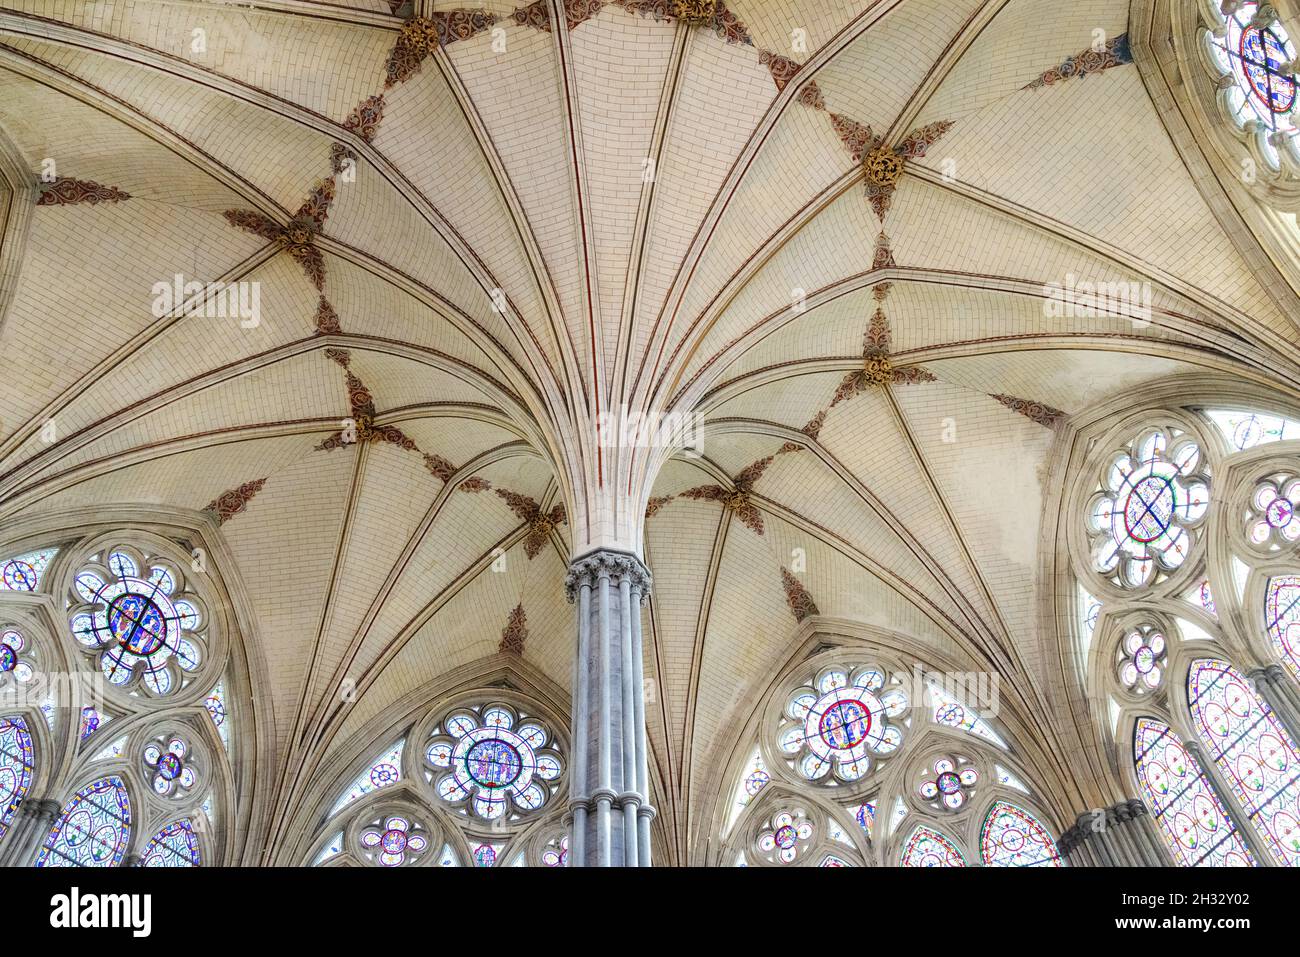 Mittelalterliche Architektur UK; Salisbury Cathedral Chapter House - die verzierte Decke und die zentrale Säule, Salisbury Wiltshire UK Stockfoto